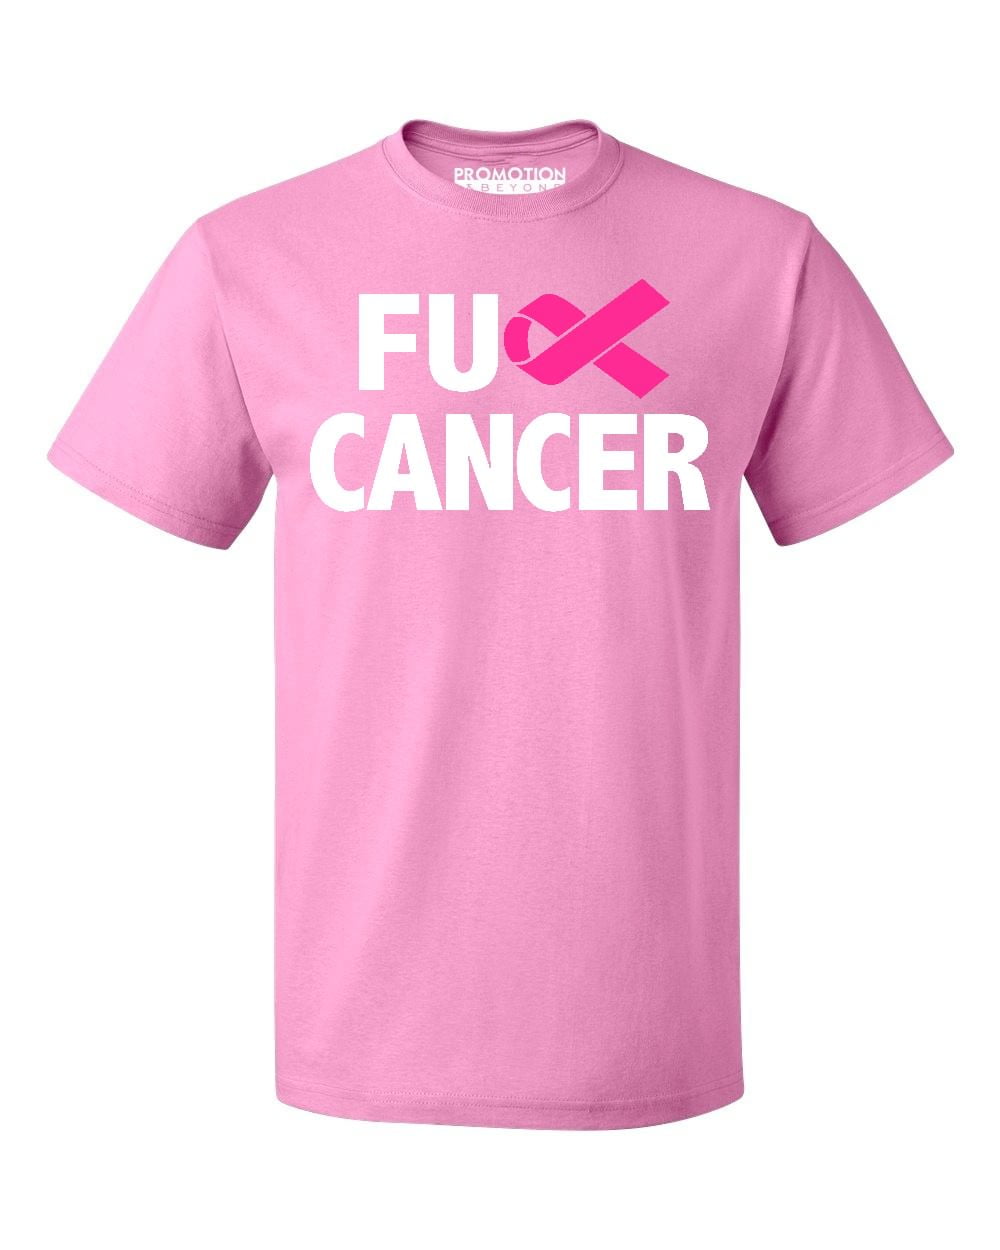 Xxxxxx Xxx Video Hd Watch Yong Sister - Promotion & Beyond F*ck Cancer Pink Ribbon Awareness Men's T-shirt, XL,  Azalea Pink - Walmart.com